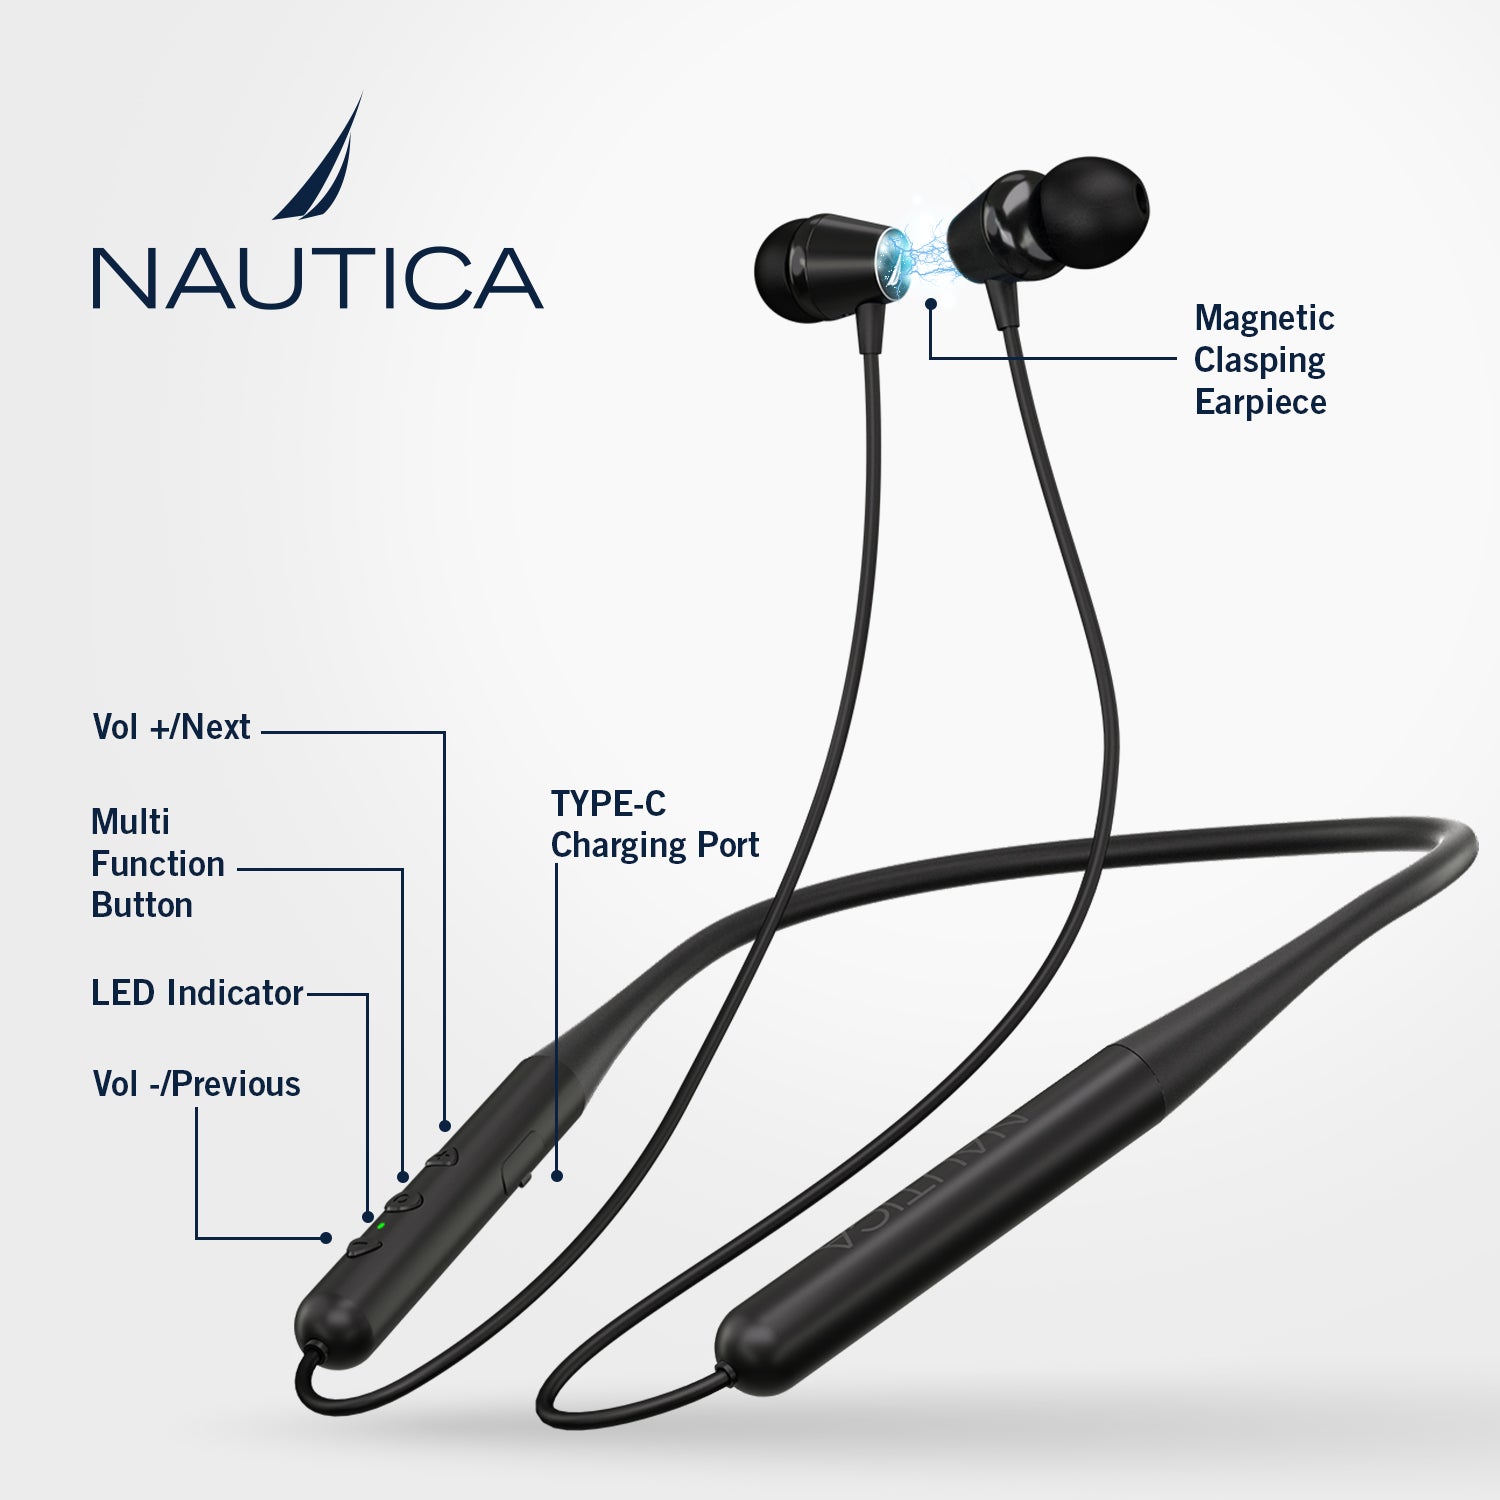 Écouteurs stéréo Bluetooth Nautica B310